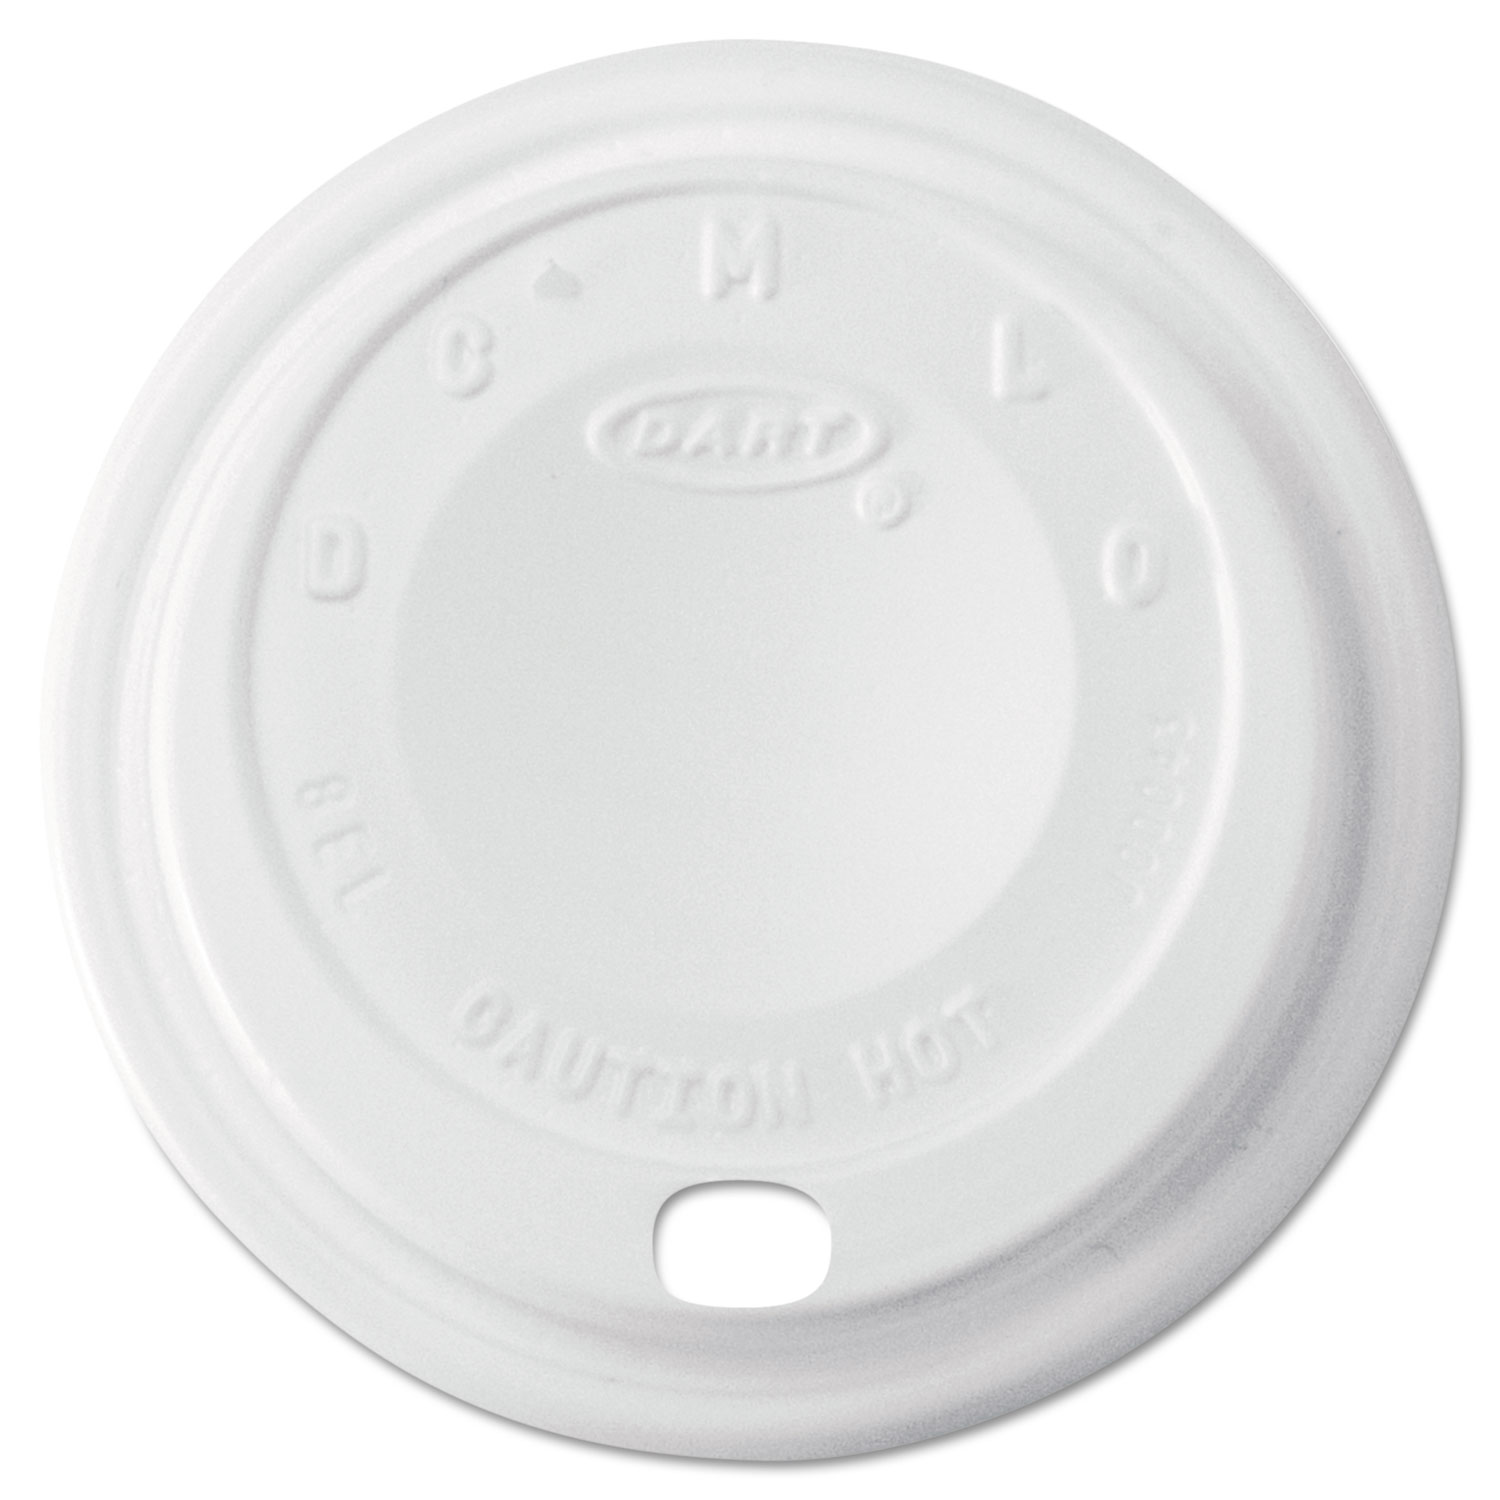  Dart 8EL Cappuccino Dome Sipper Lids, 8-10oz Cups, White, 1000/Carton (DCC8EL) 